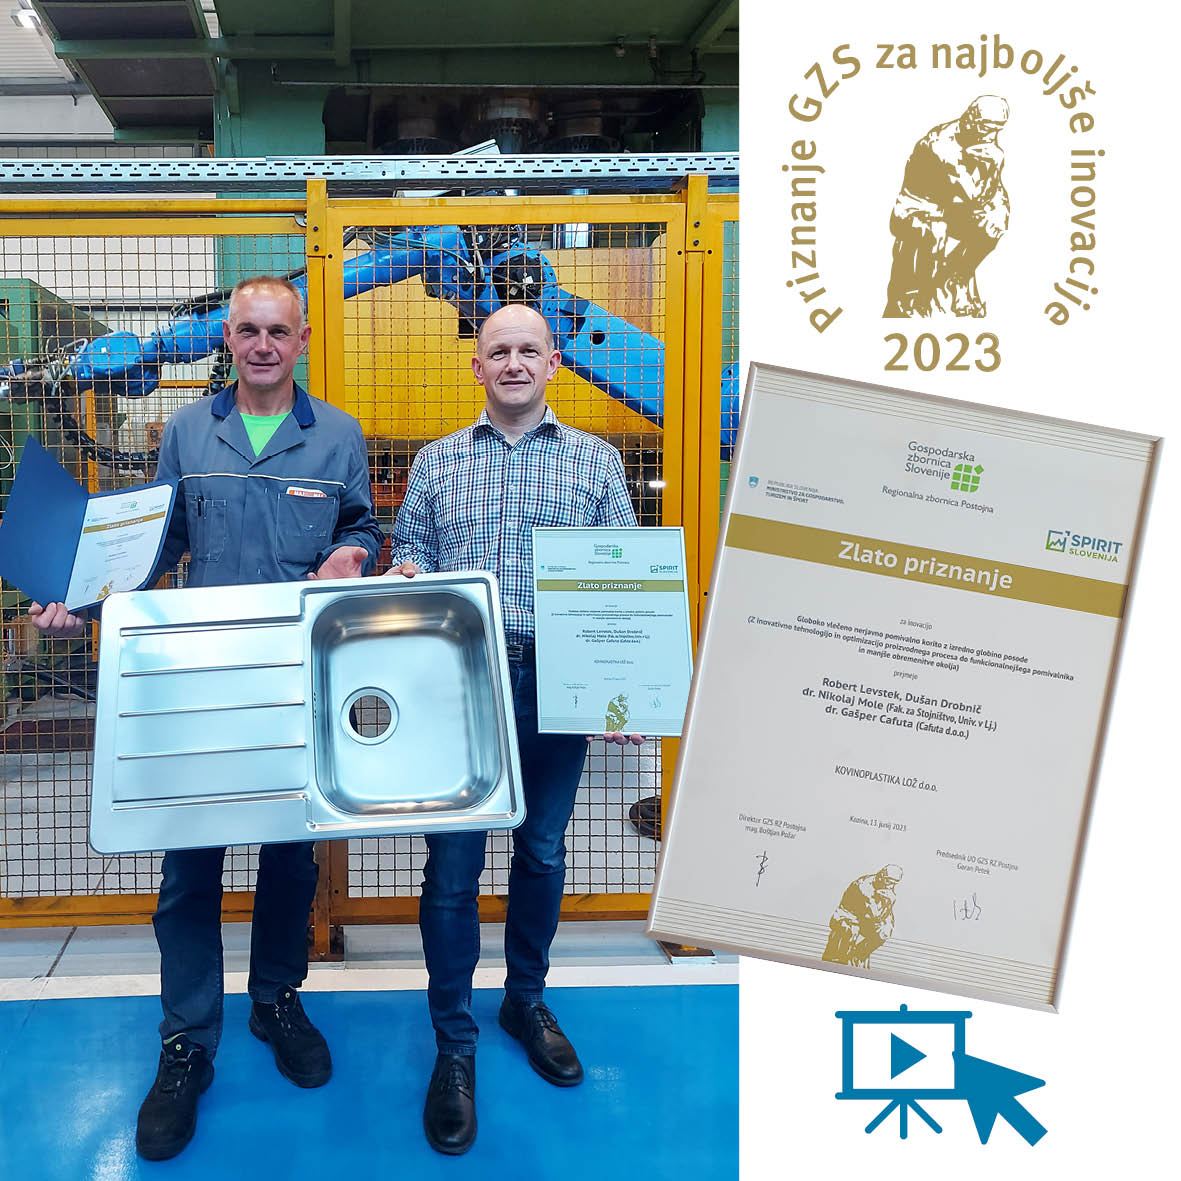 Alveus received a GOLD award for innovation